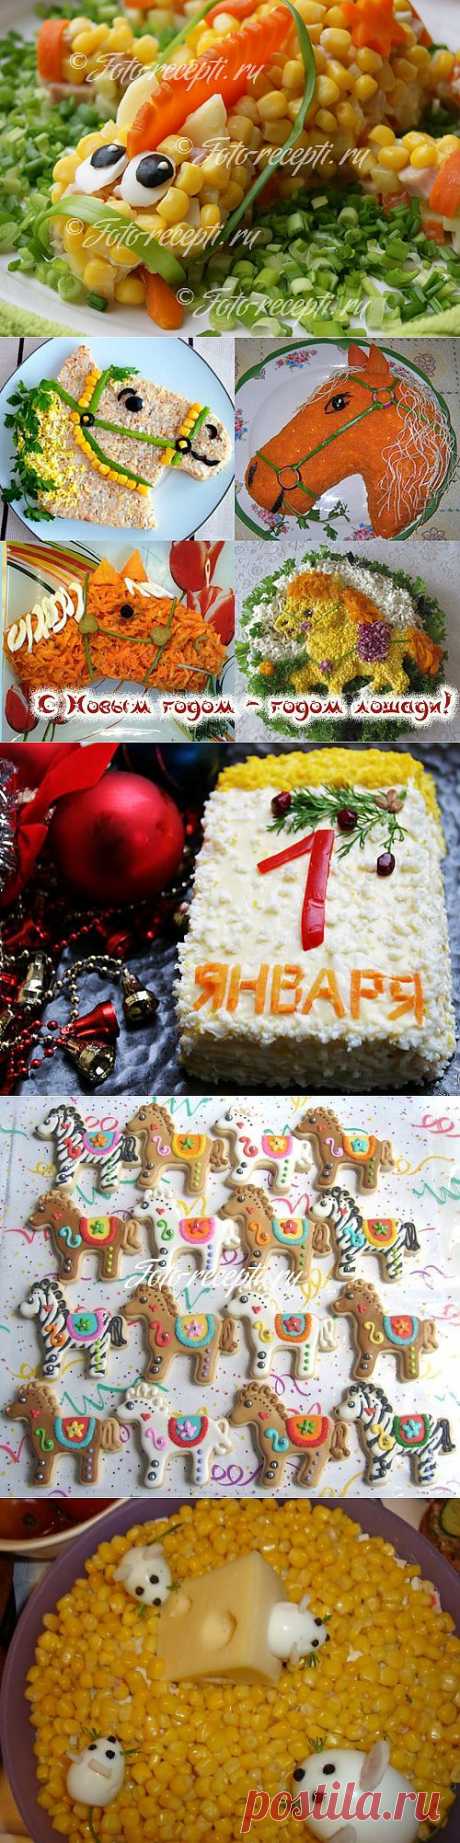 Что приготовить на Новый год 2014: новогодние салаты, закуски, горячее, десерт - Рецепты с фото пошагового приготовления на Фото-Рецепты. ру